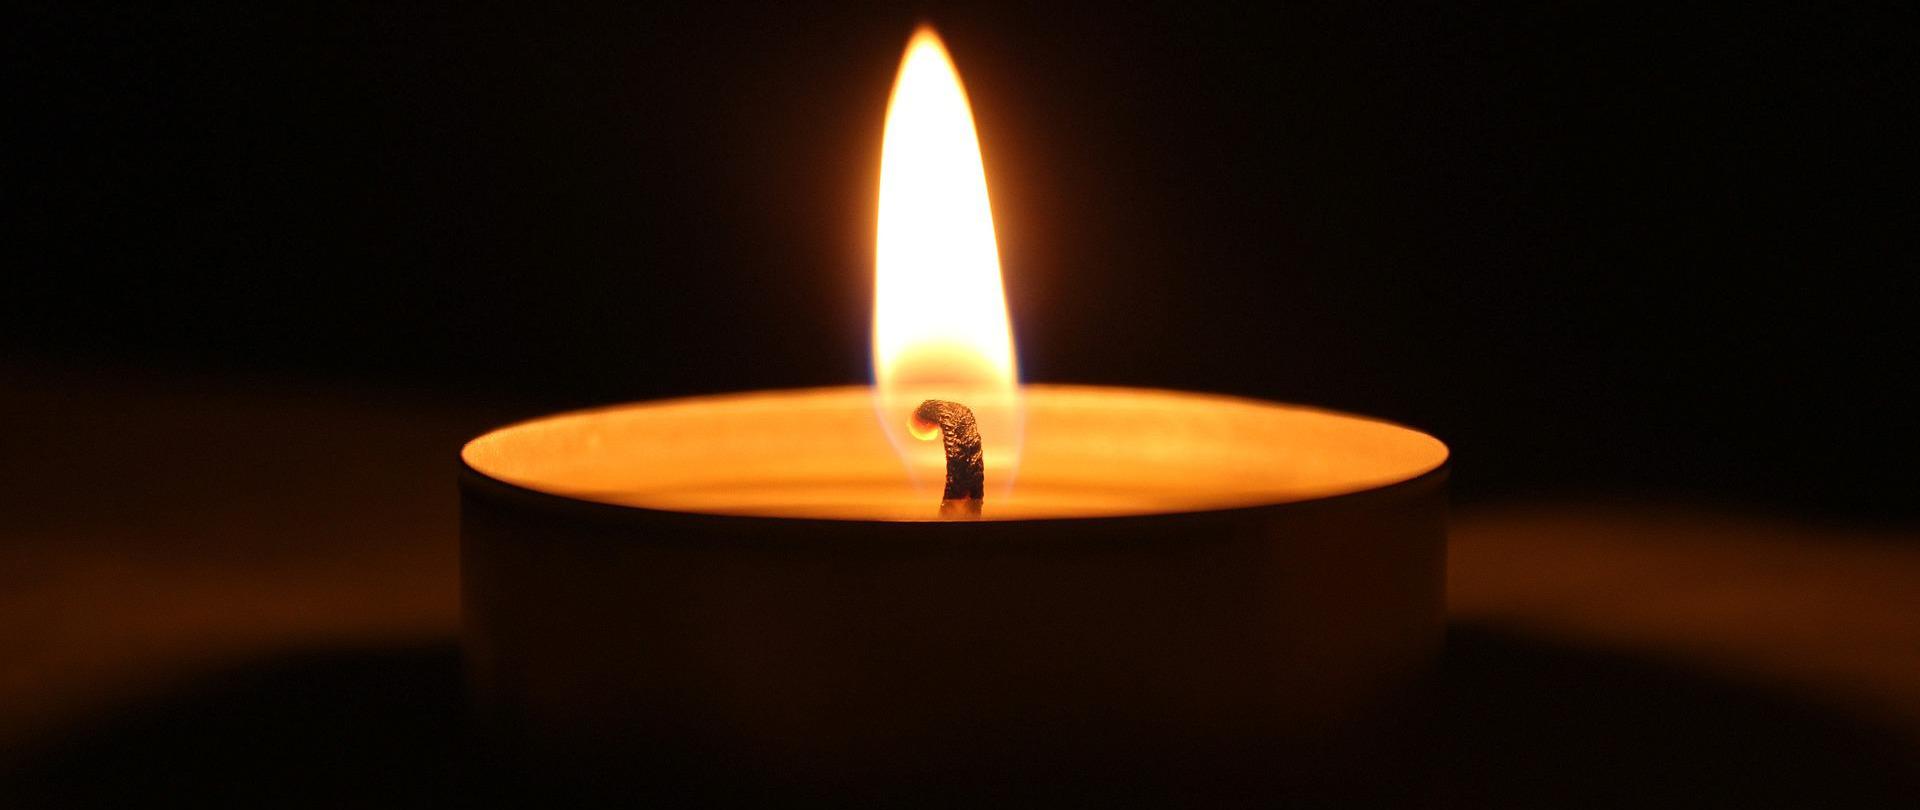 zdjęcie przedstawia na ciemnym tle płonącą świeczkę typu tealight.